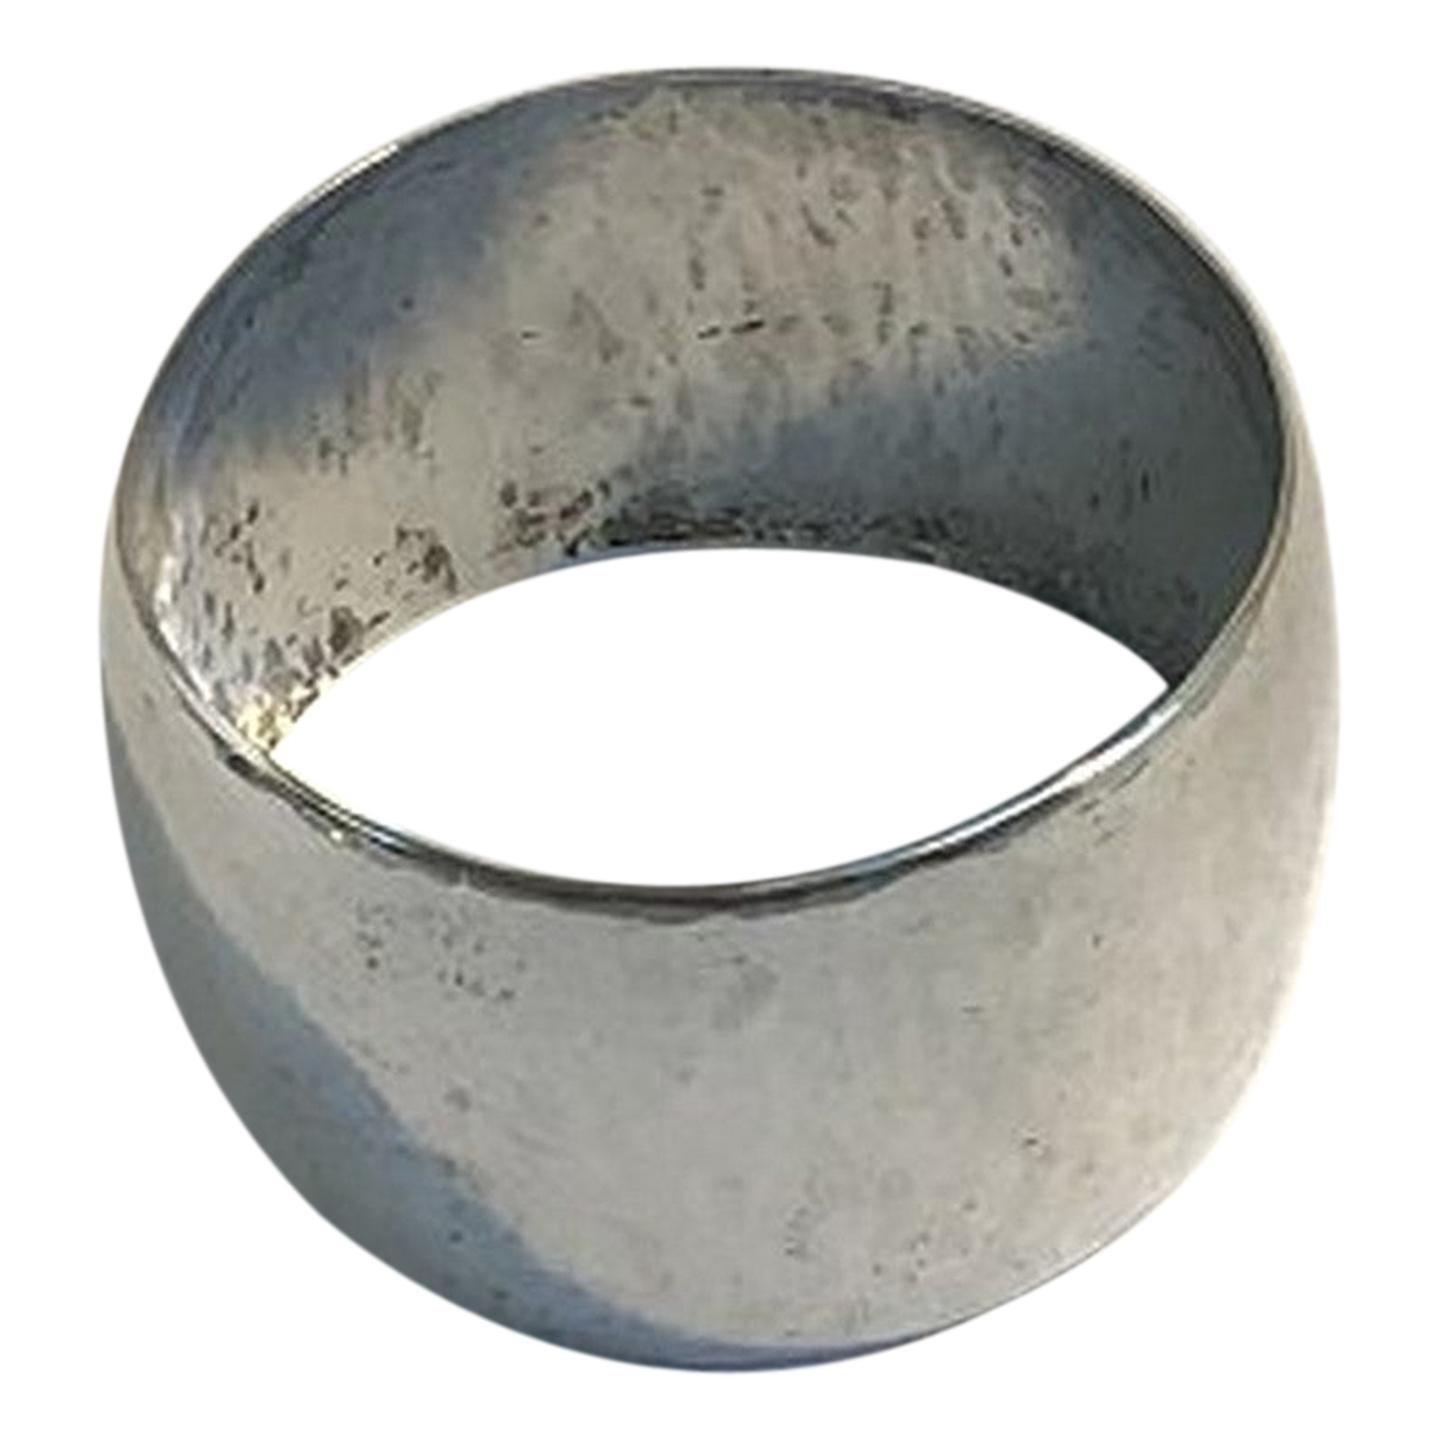 Georg Jensen Georg Jensen Denmark Antique Sterling Silver Napkin Ring 110B 